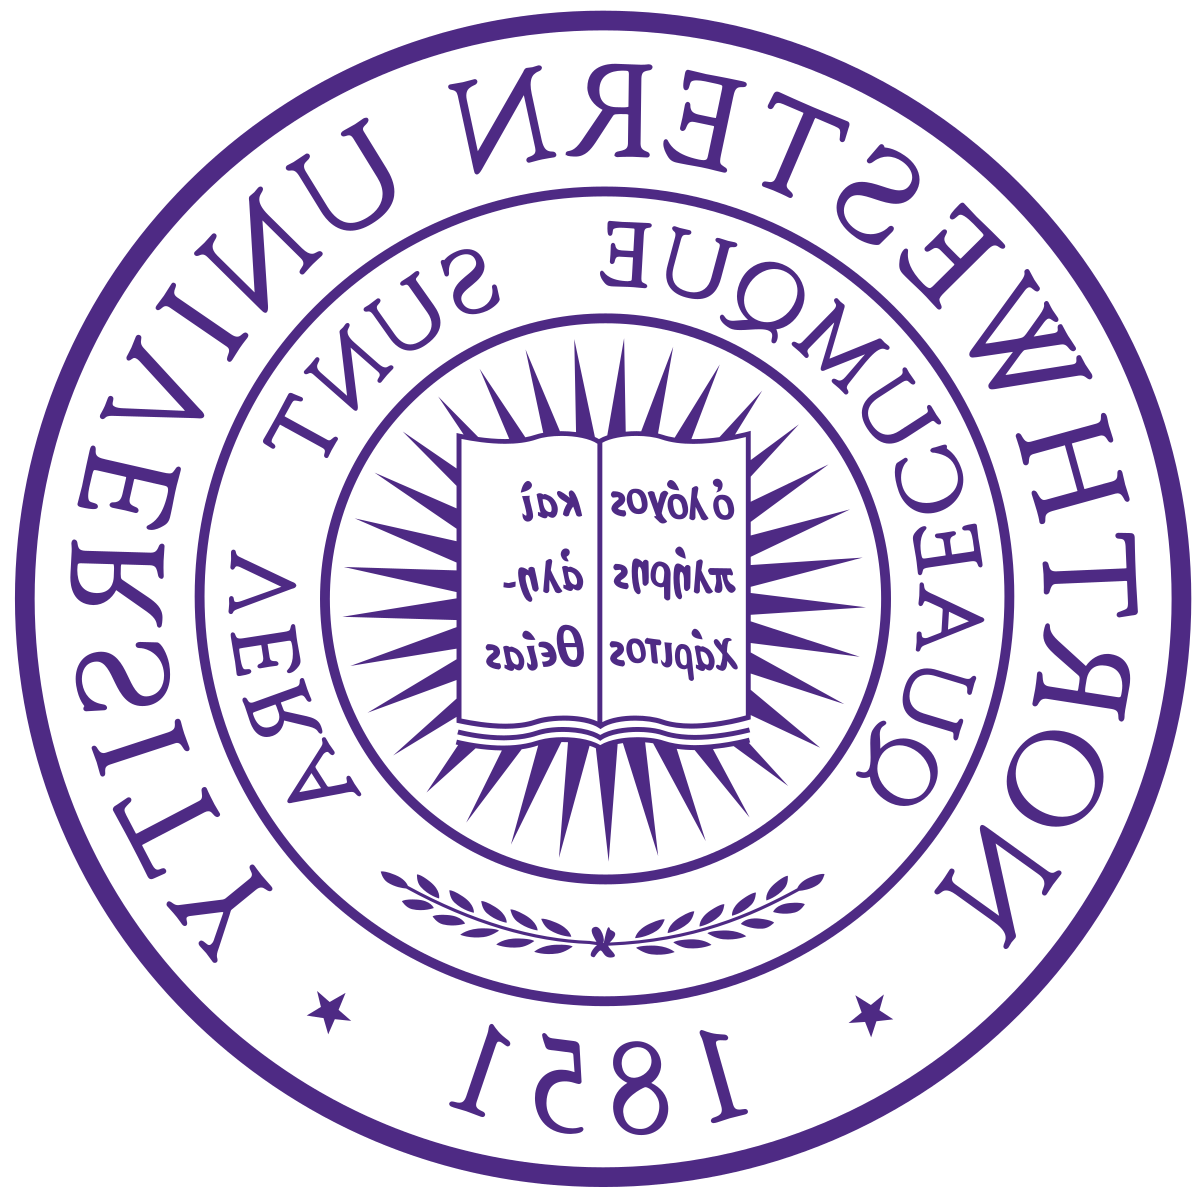 西北大学校徽